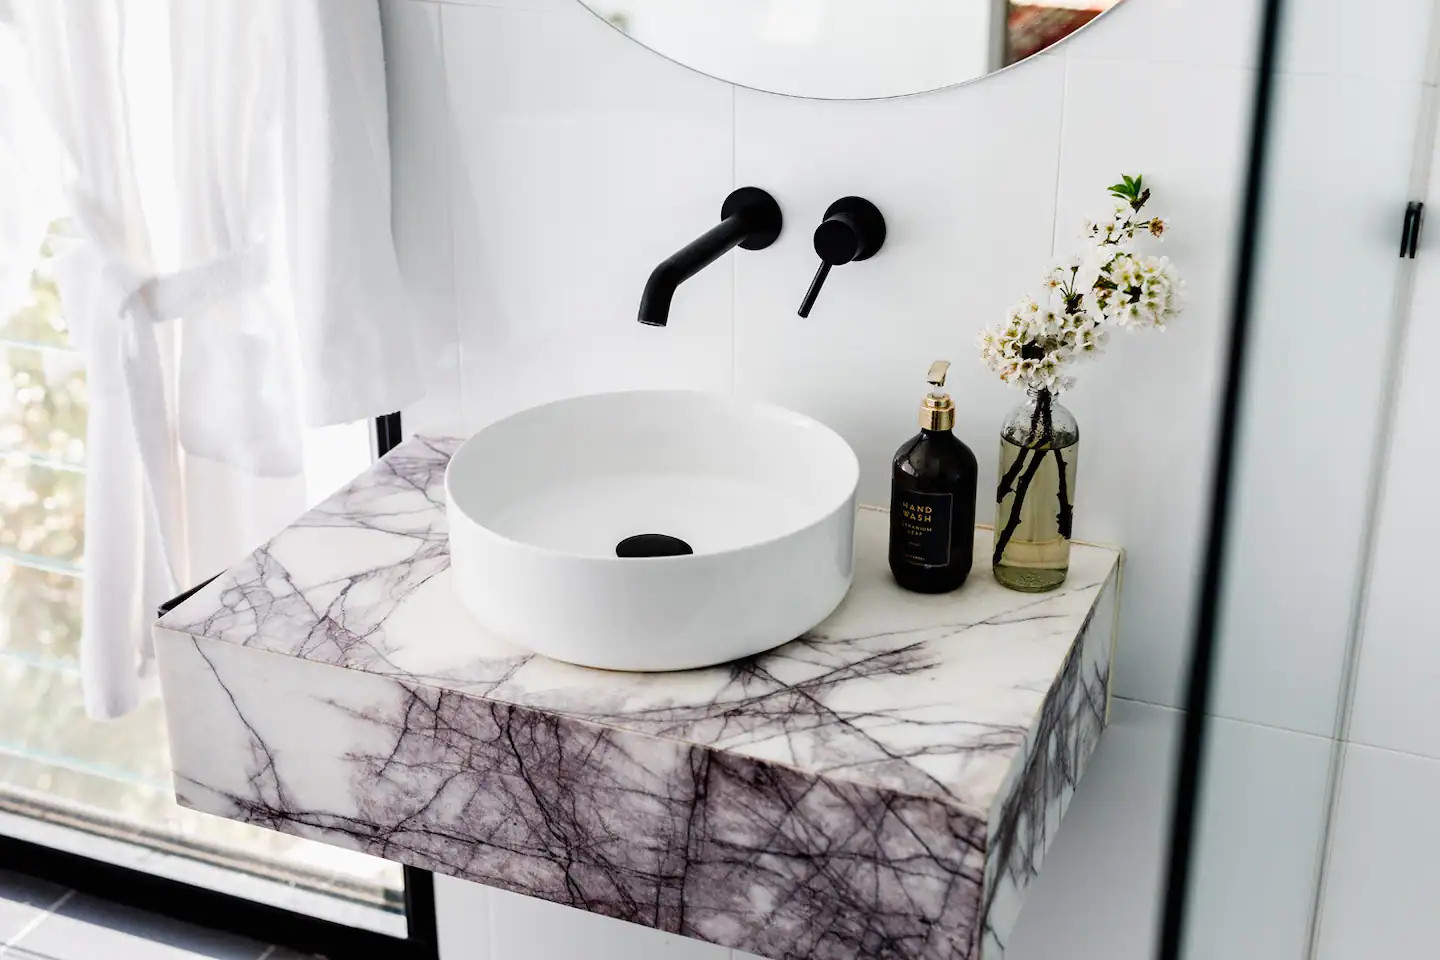 salle de bain design marbre blanc